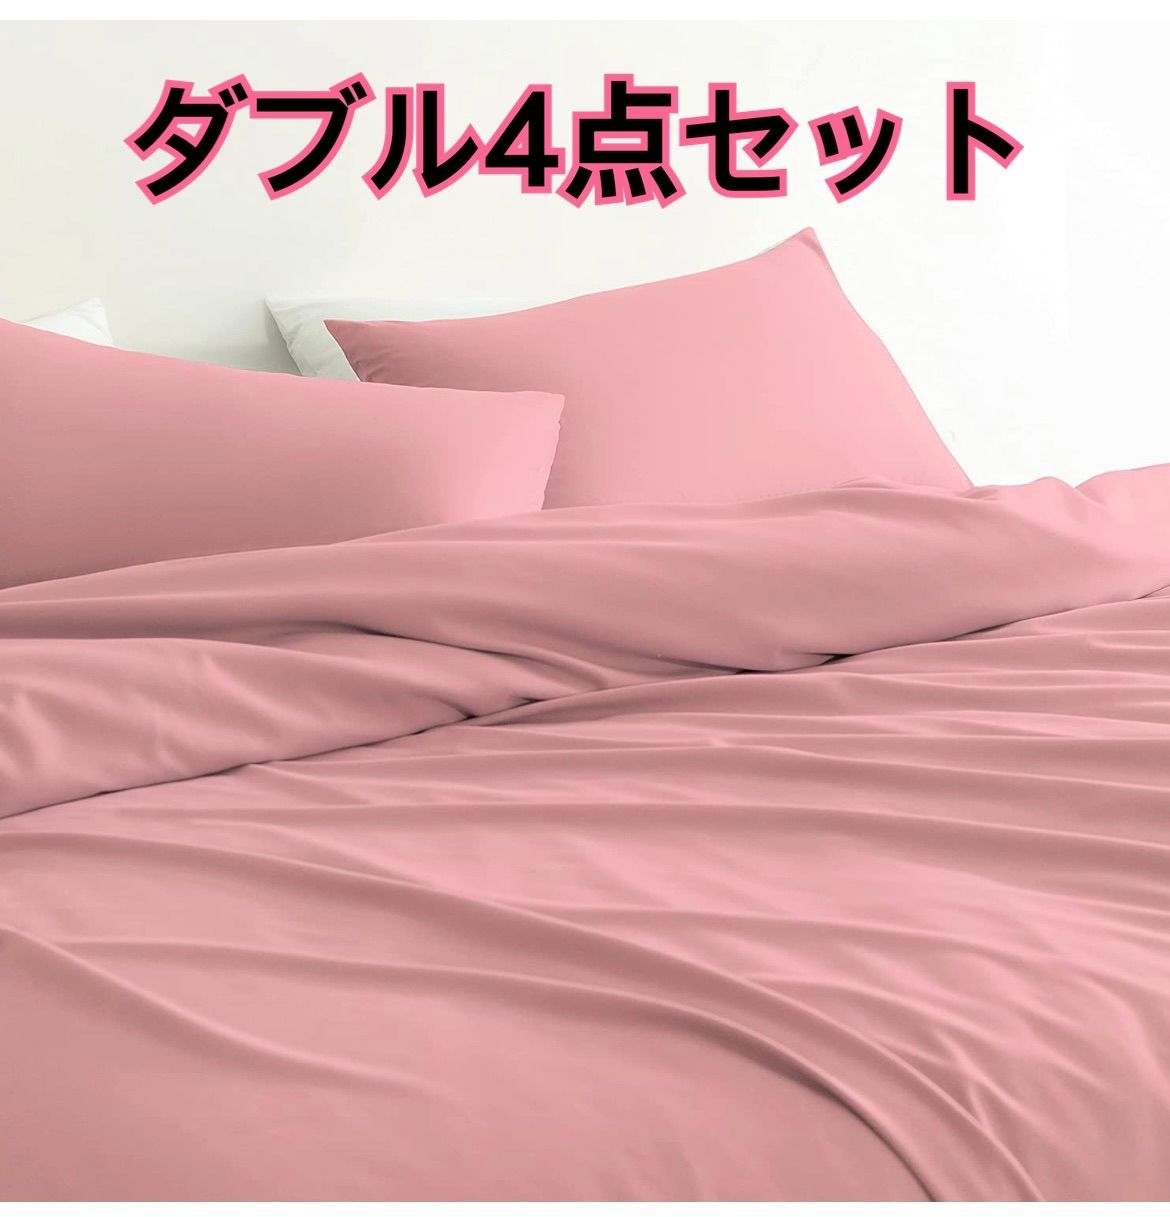 Umi(ウミ) - 布団カバー 4点セット ダブル シーツ 寝具カバーセット ...